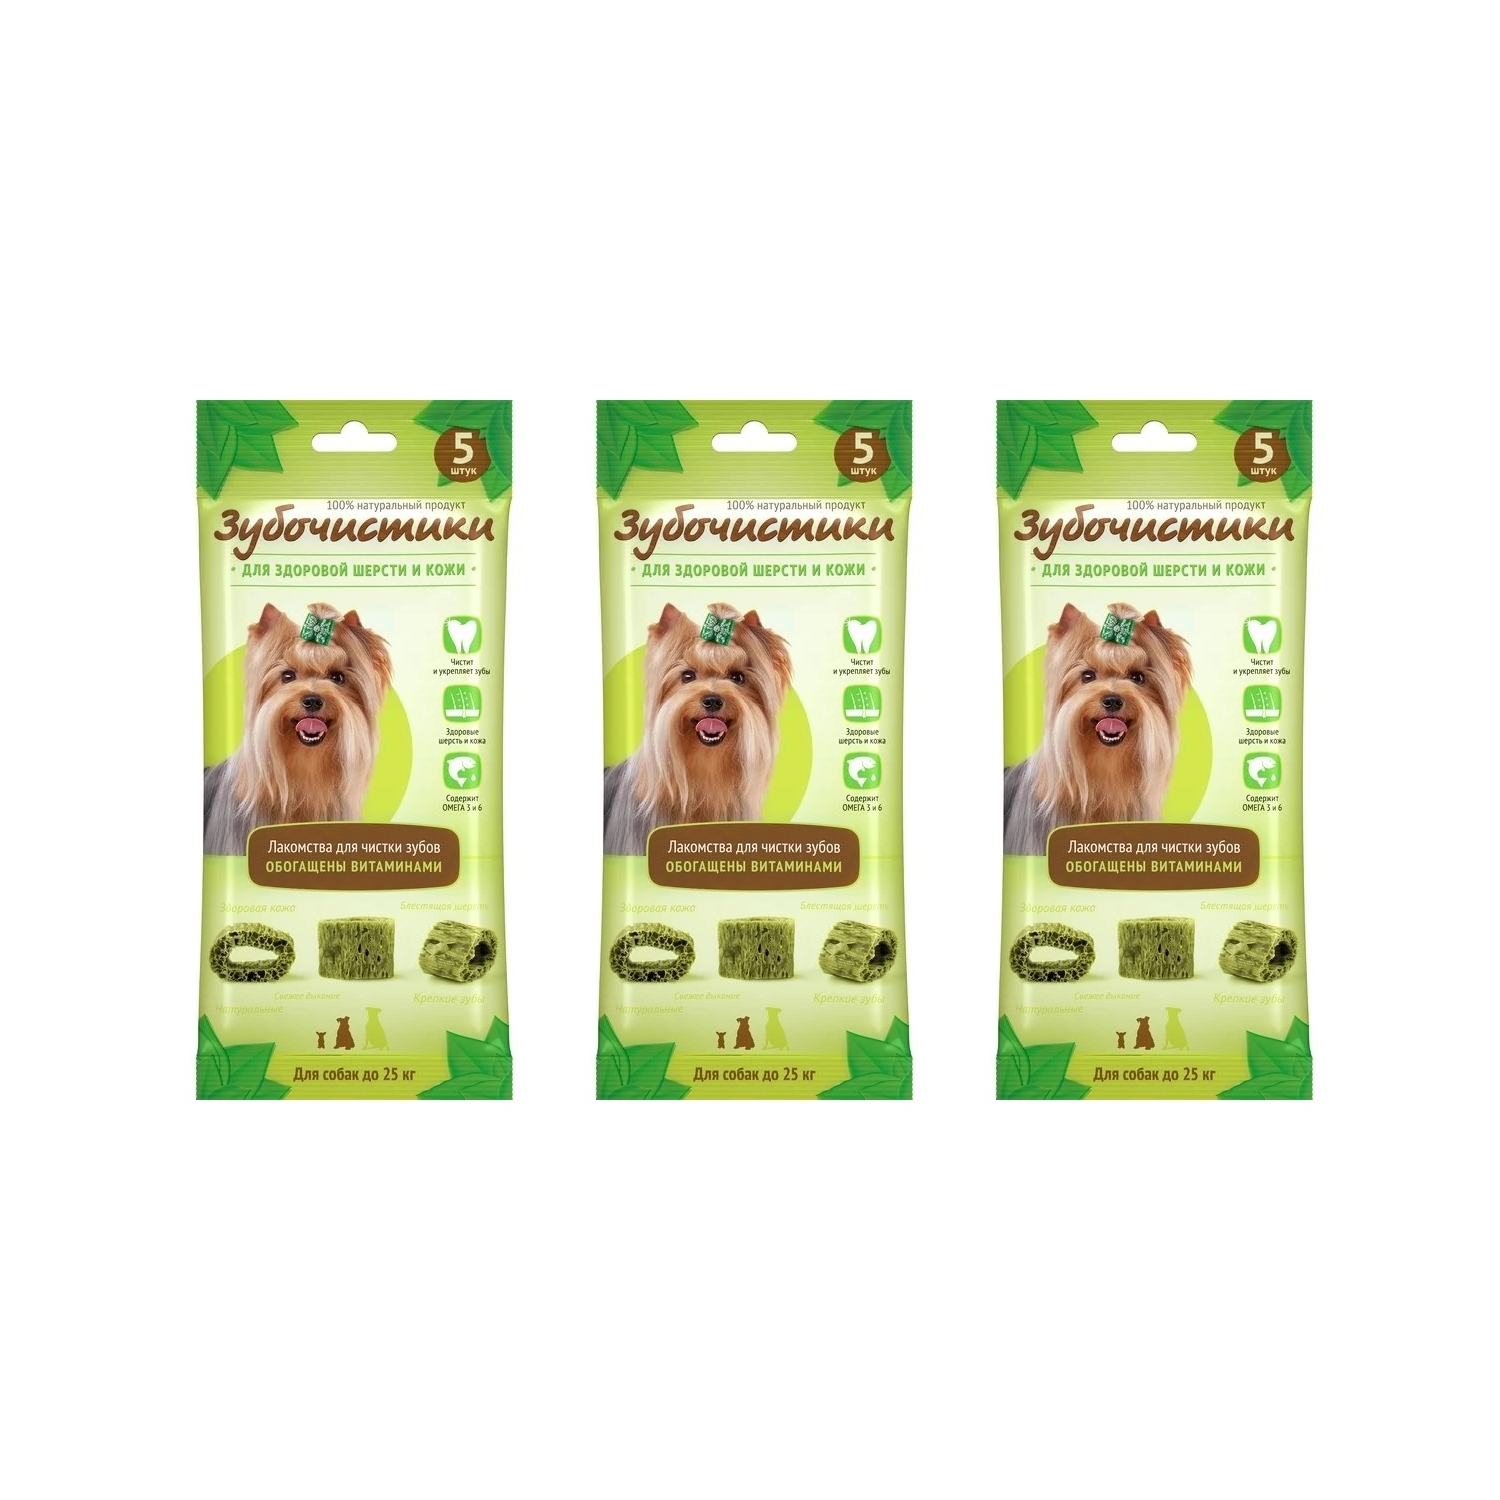 Лакомство для собак Деревенские лакомства Авокадо с витаминами 5 шт/уп, 3 шт